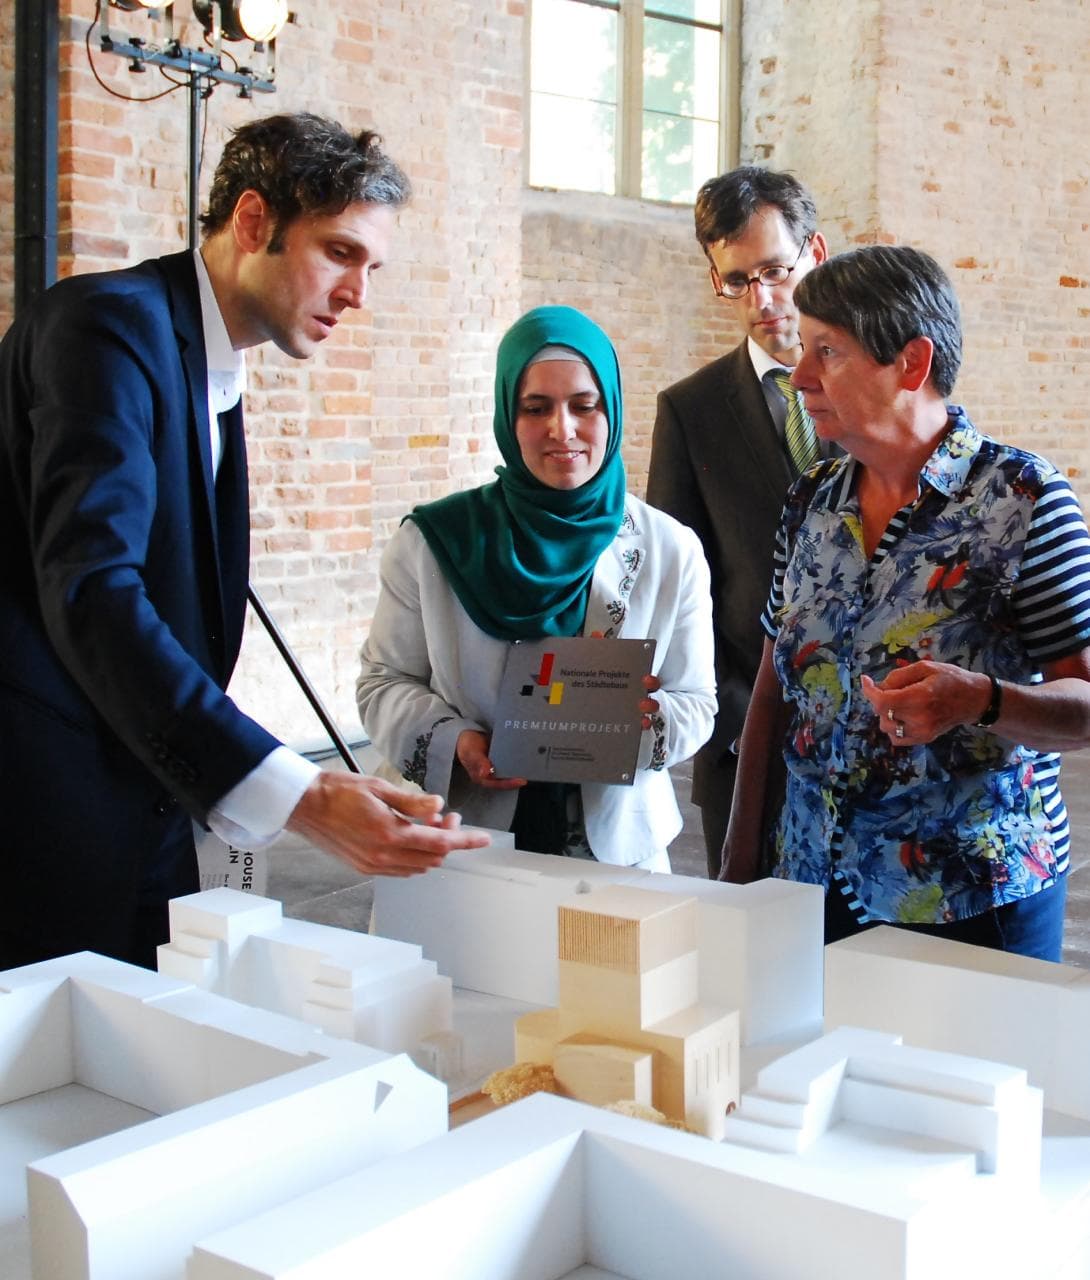 Bundesbauministerin Barbara Hendricks anlässlich der Auszeichnung des House of One als "Nationales Projekt des Städtebaus" im Jahr 2016